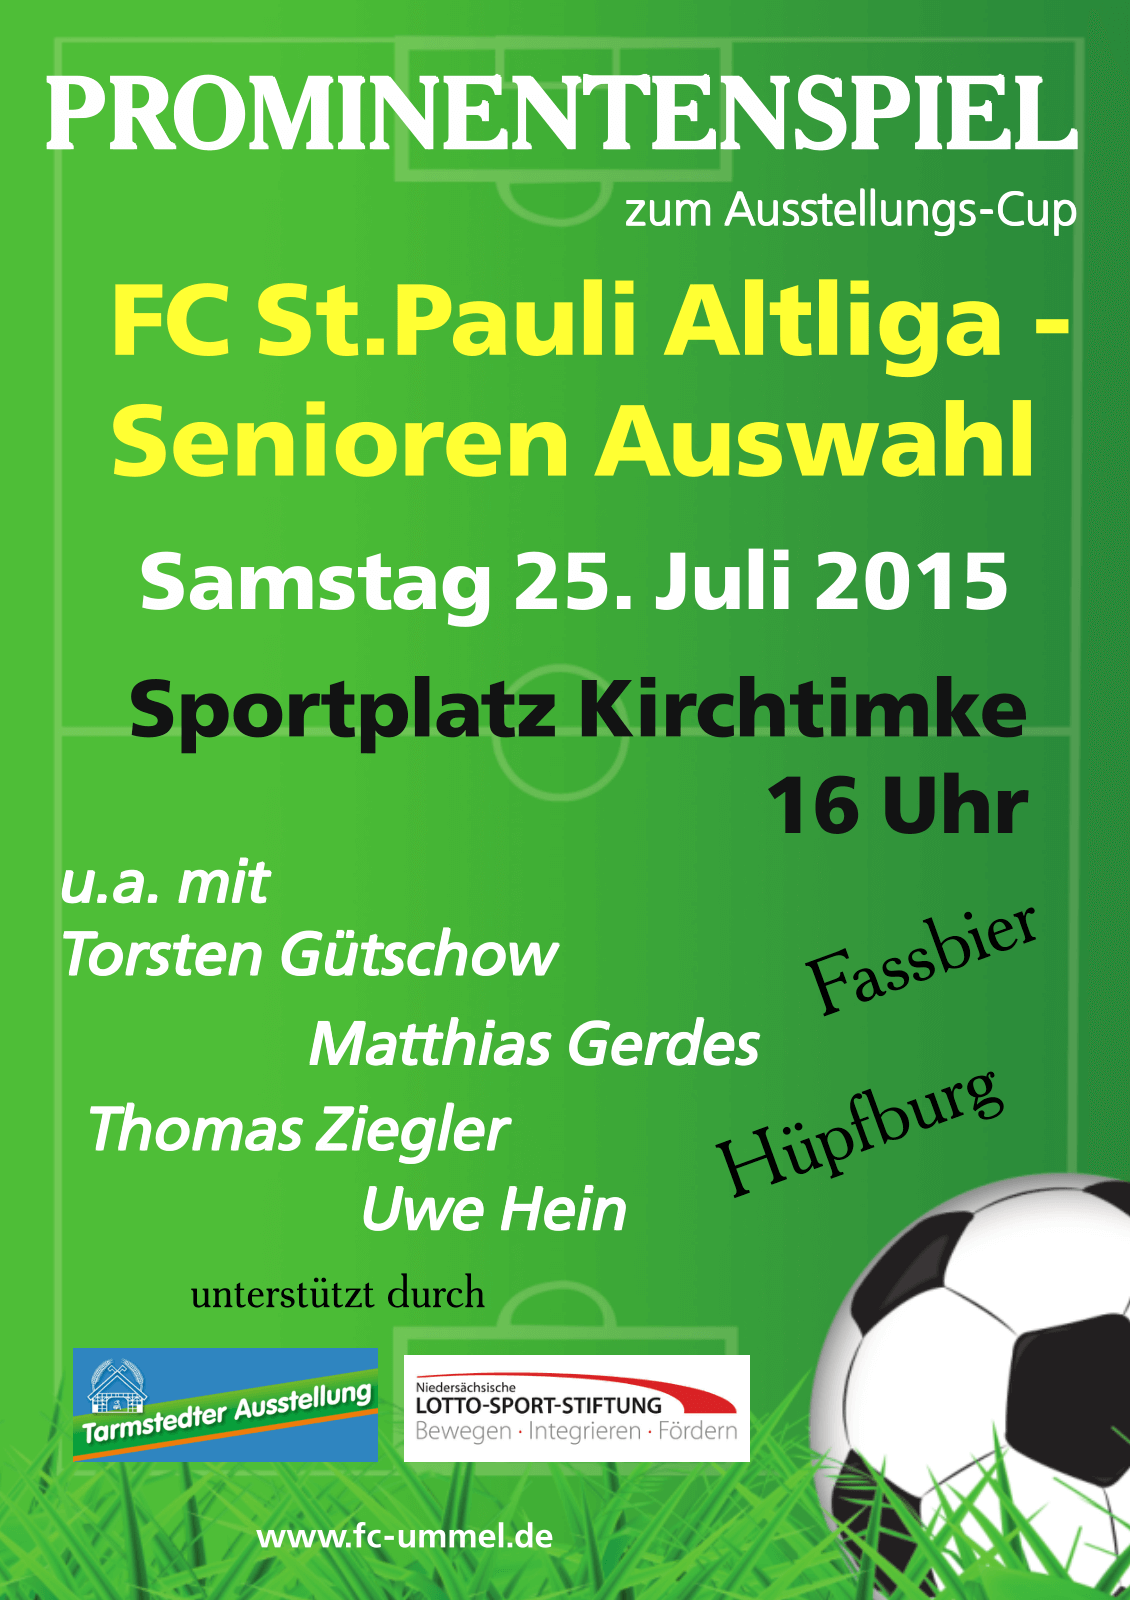 Attraktive Fußball-Sportwoche rund um den Ausstellungs-Cup in Kirchtimke